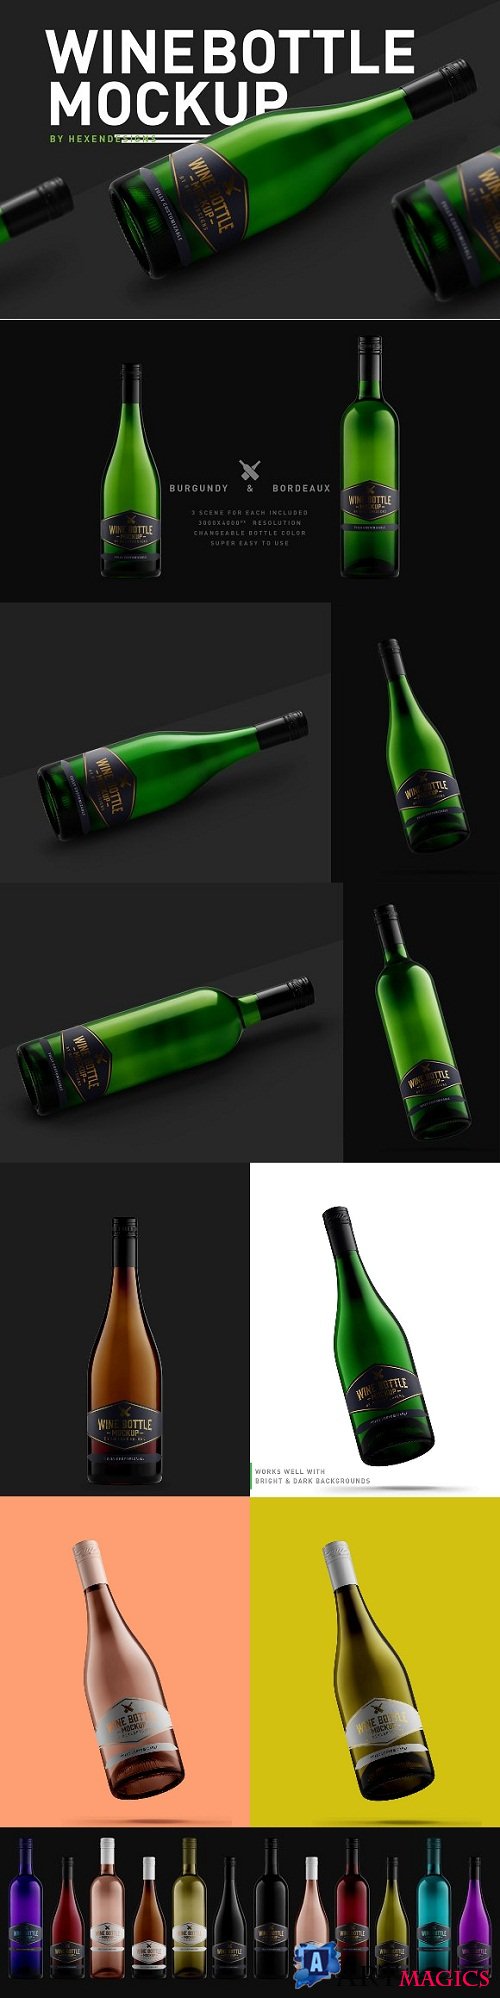 Wine Bottle Mockup - 3207209